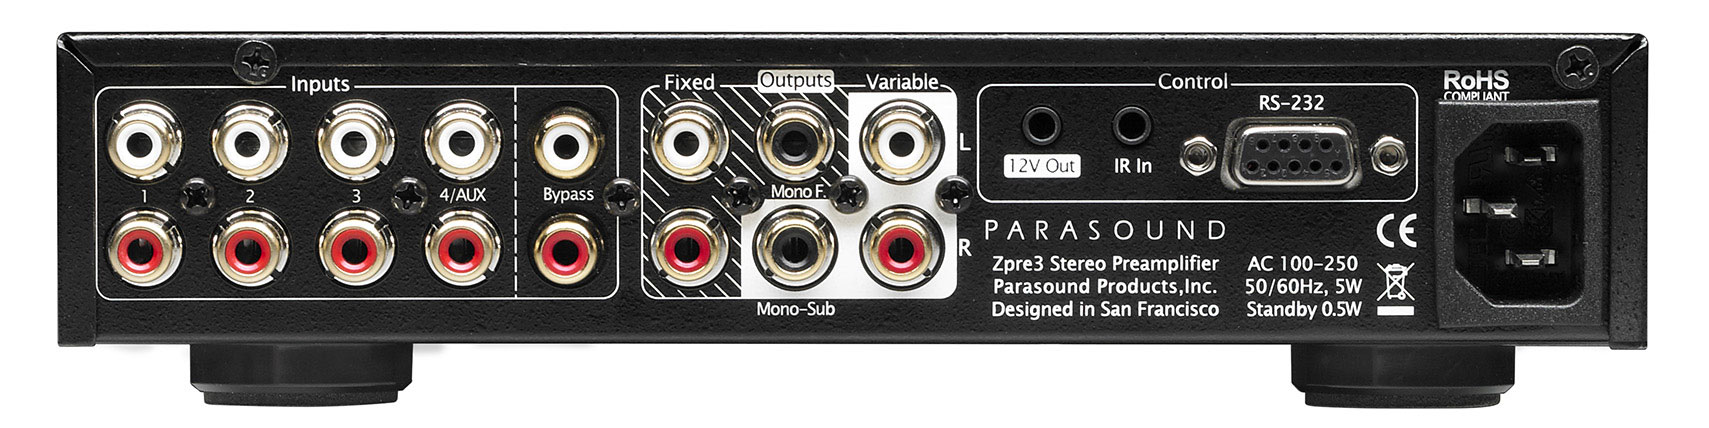 Parasound Zpre3 задняя панель